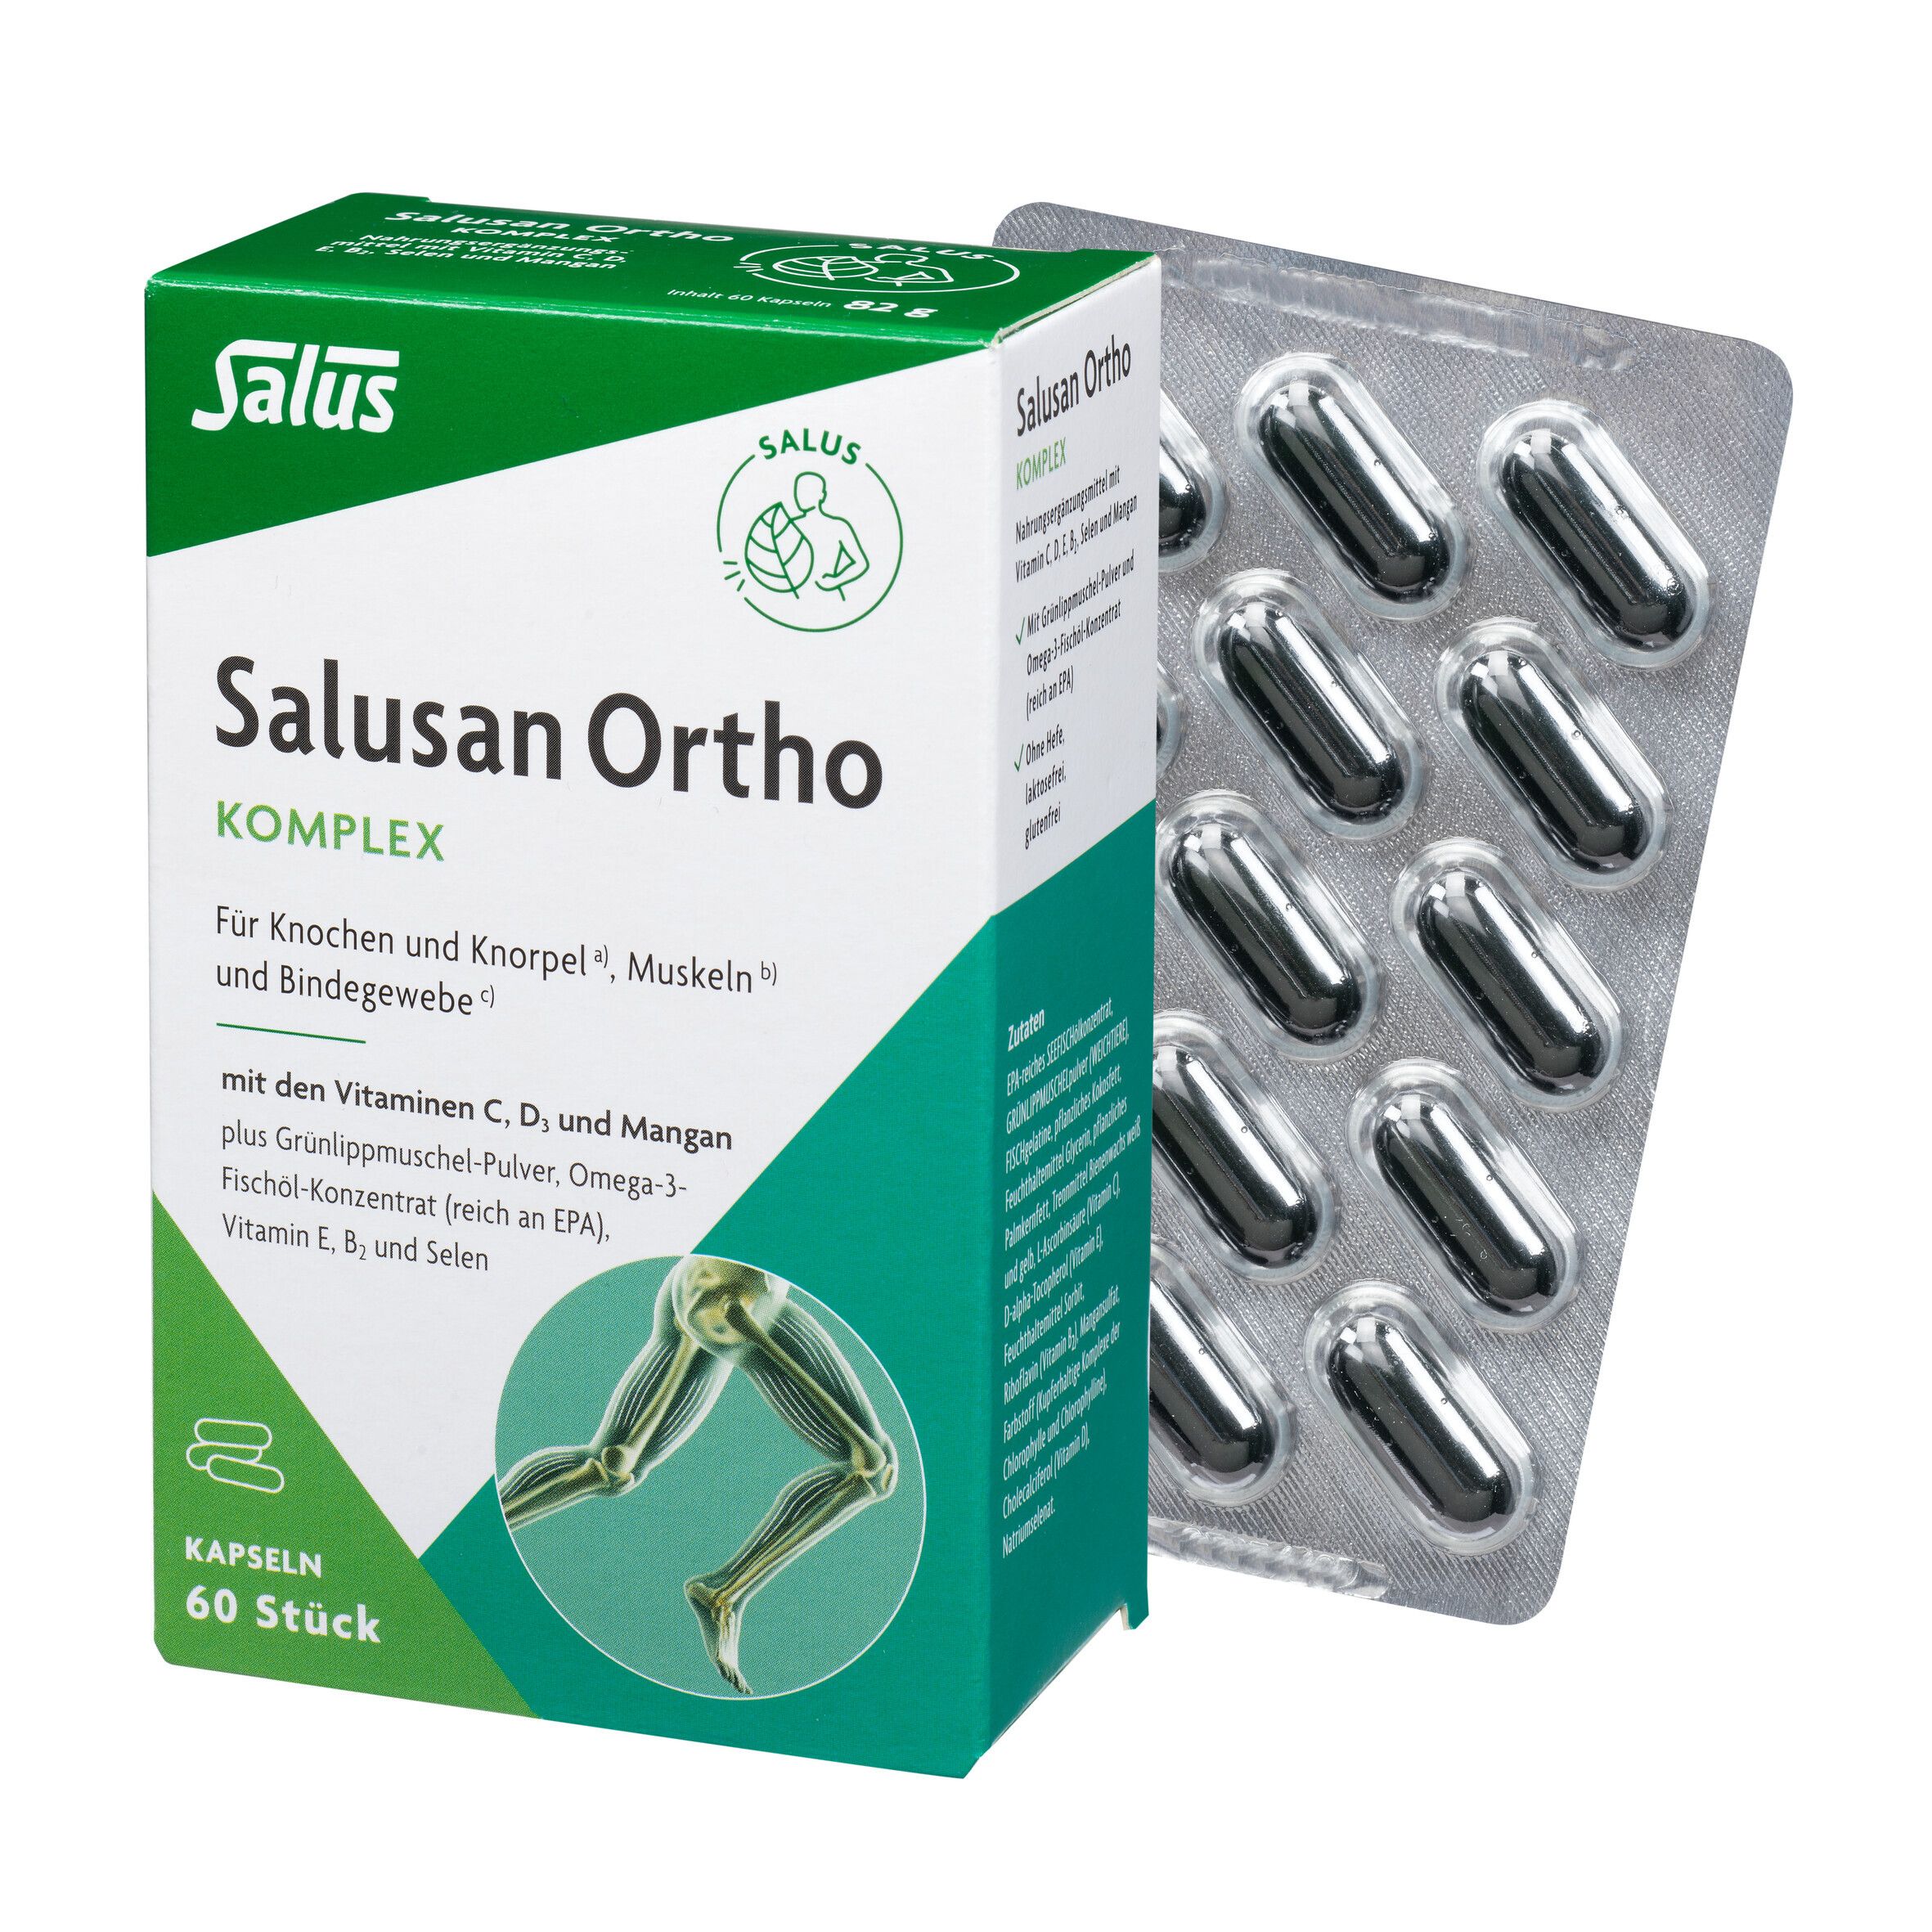 SALUS Pharma GmbH Salus® Salusan Ortho Komplex-Kapseln